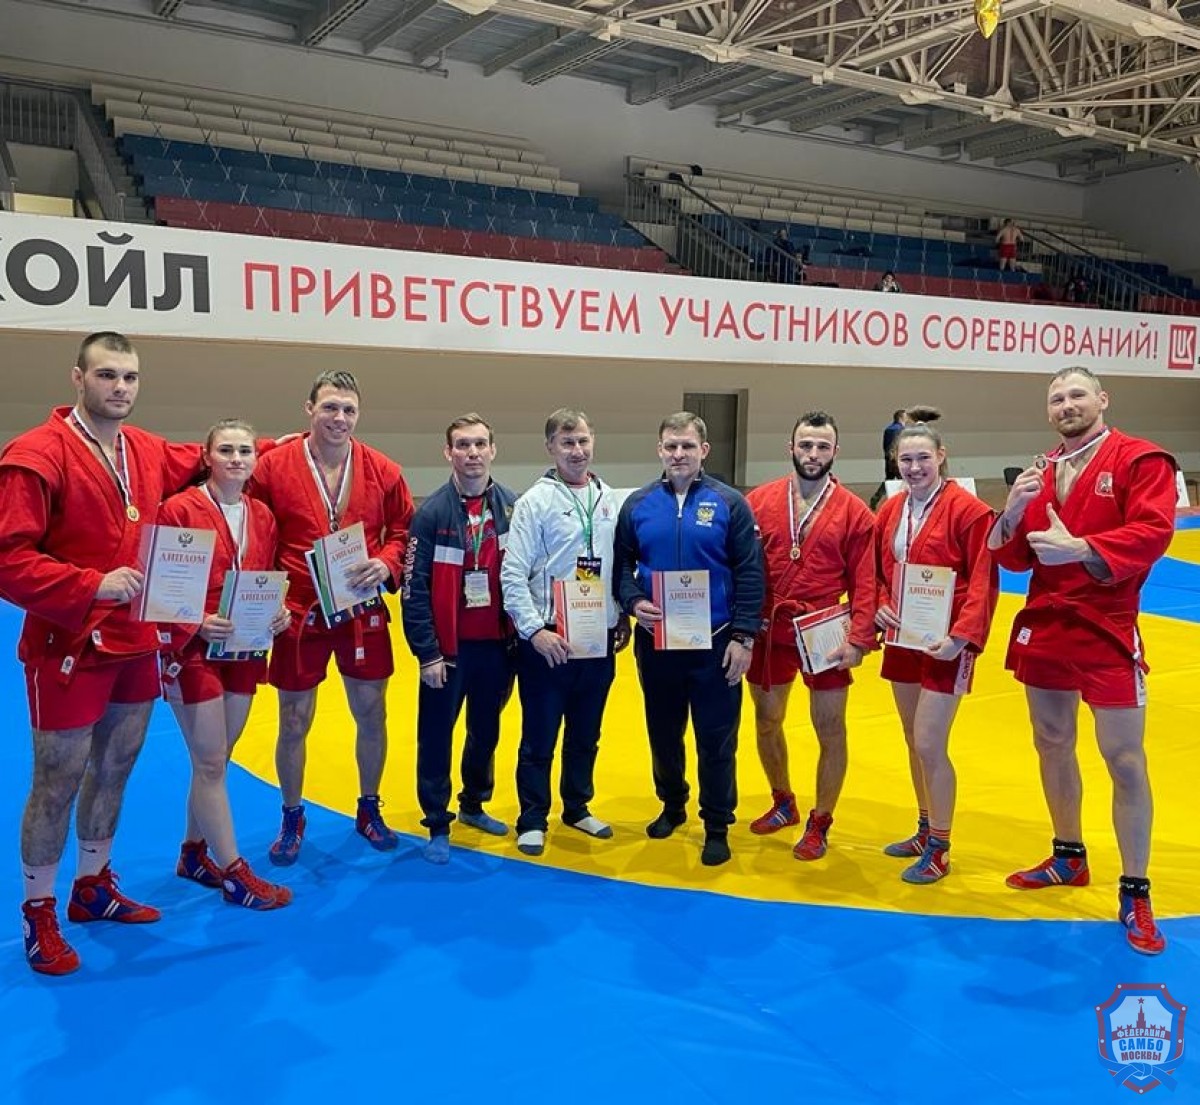 5 золотых медалей в 1-й день Кубка России по самбо и боевому самбо в Кстово 2021 года